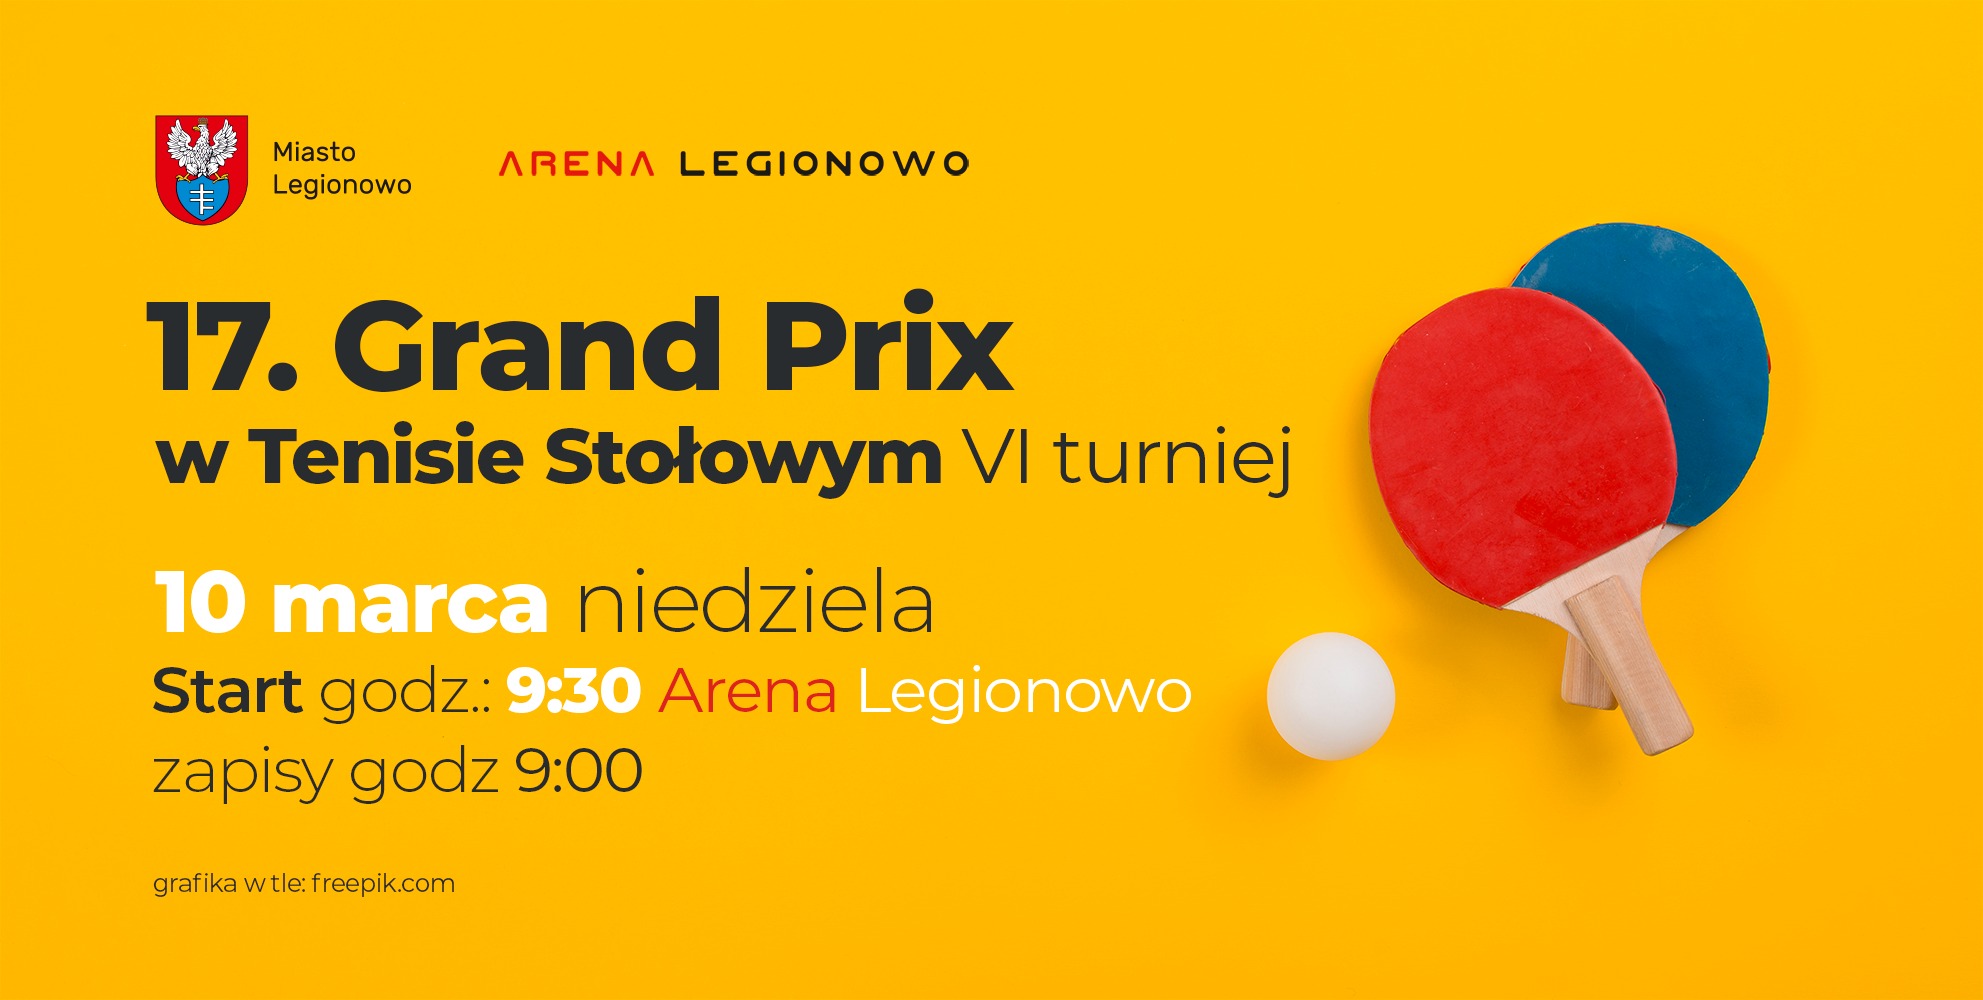 Plakat turnieju VI turniej 17. Grand Prix  w tenisie stołowym w Legionowie